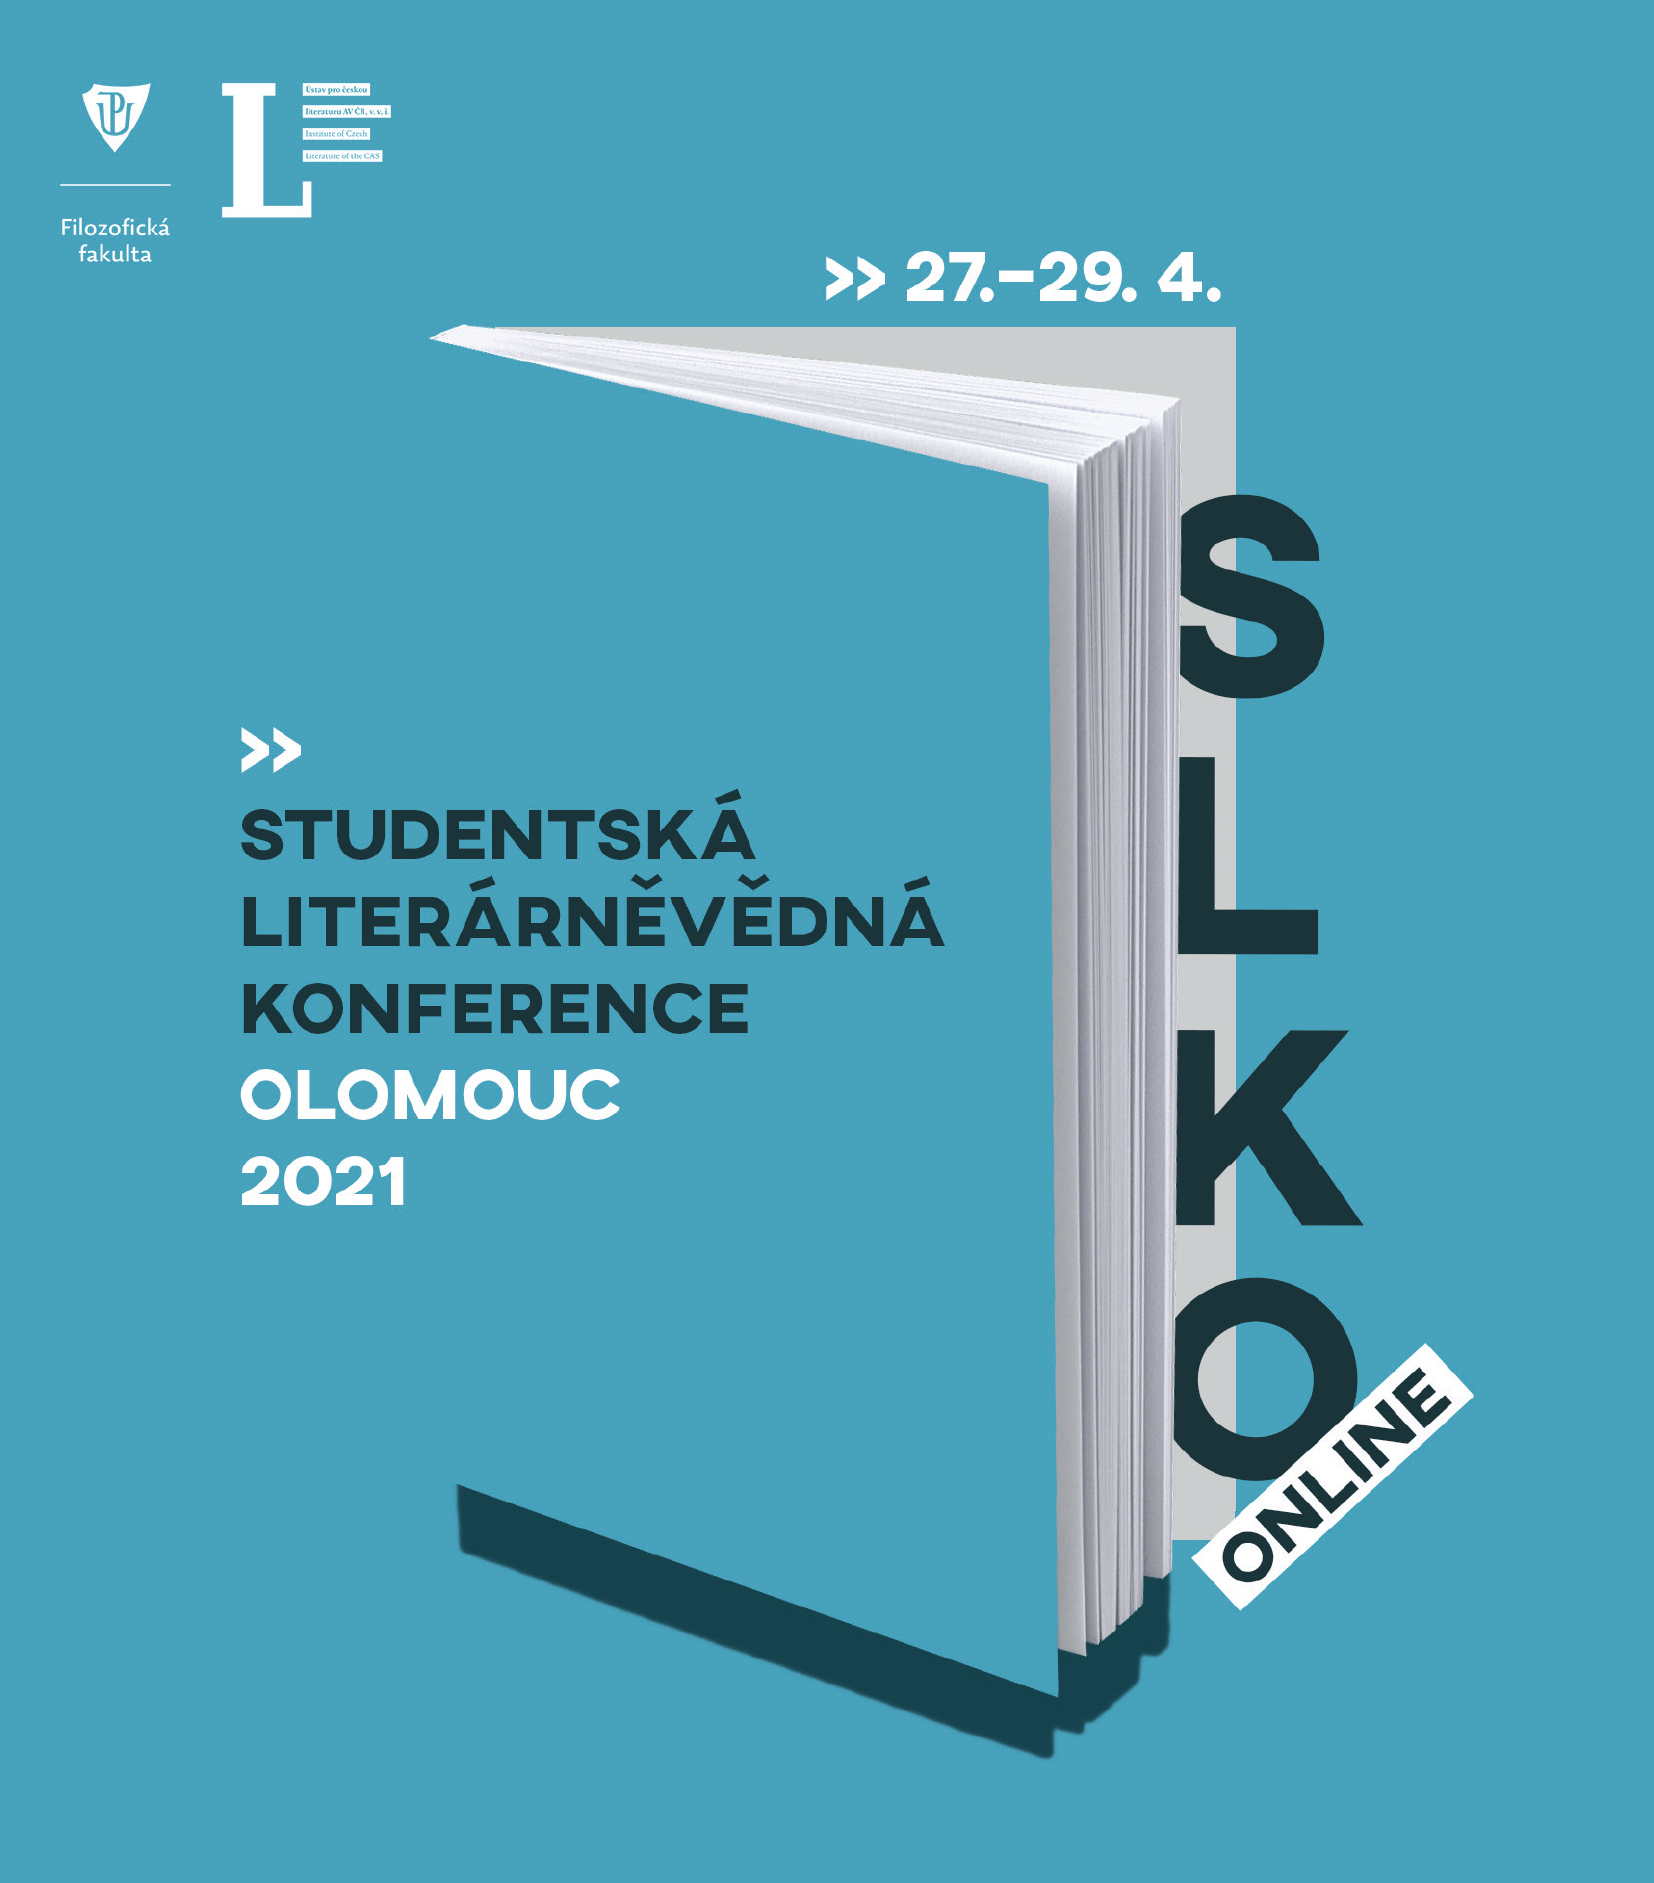 Studentská literárněvědná konference 2021